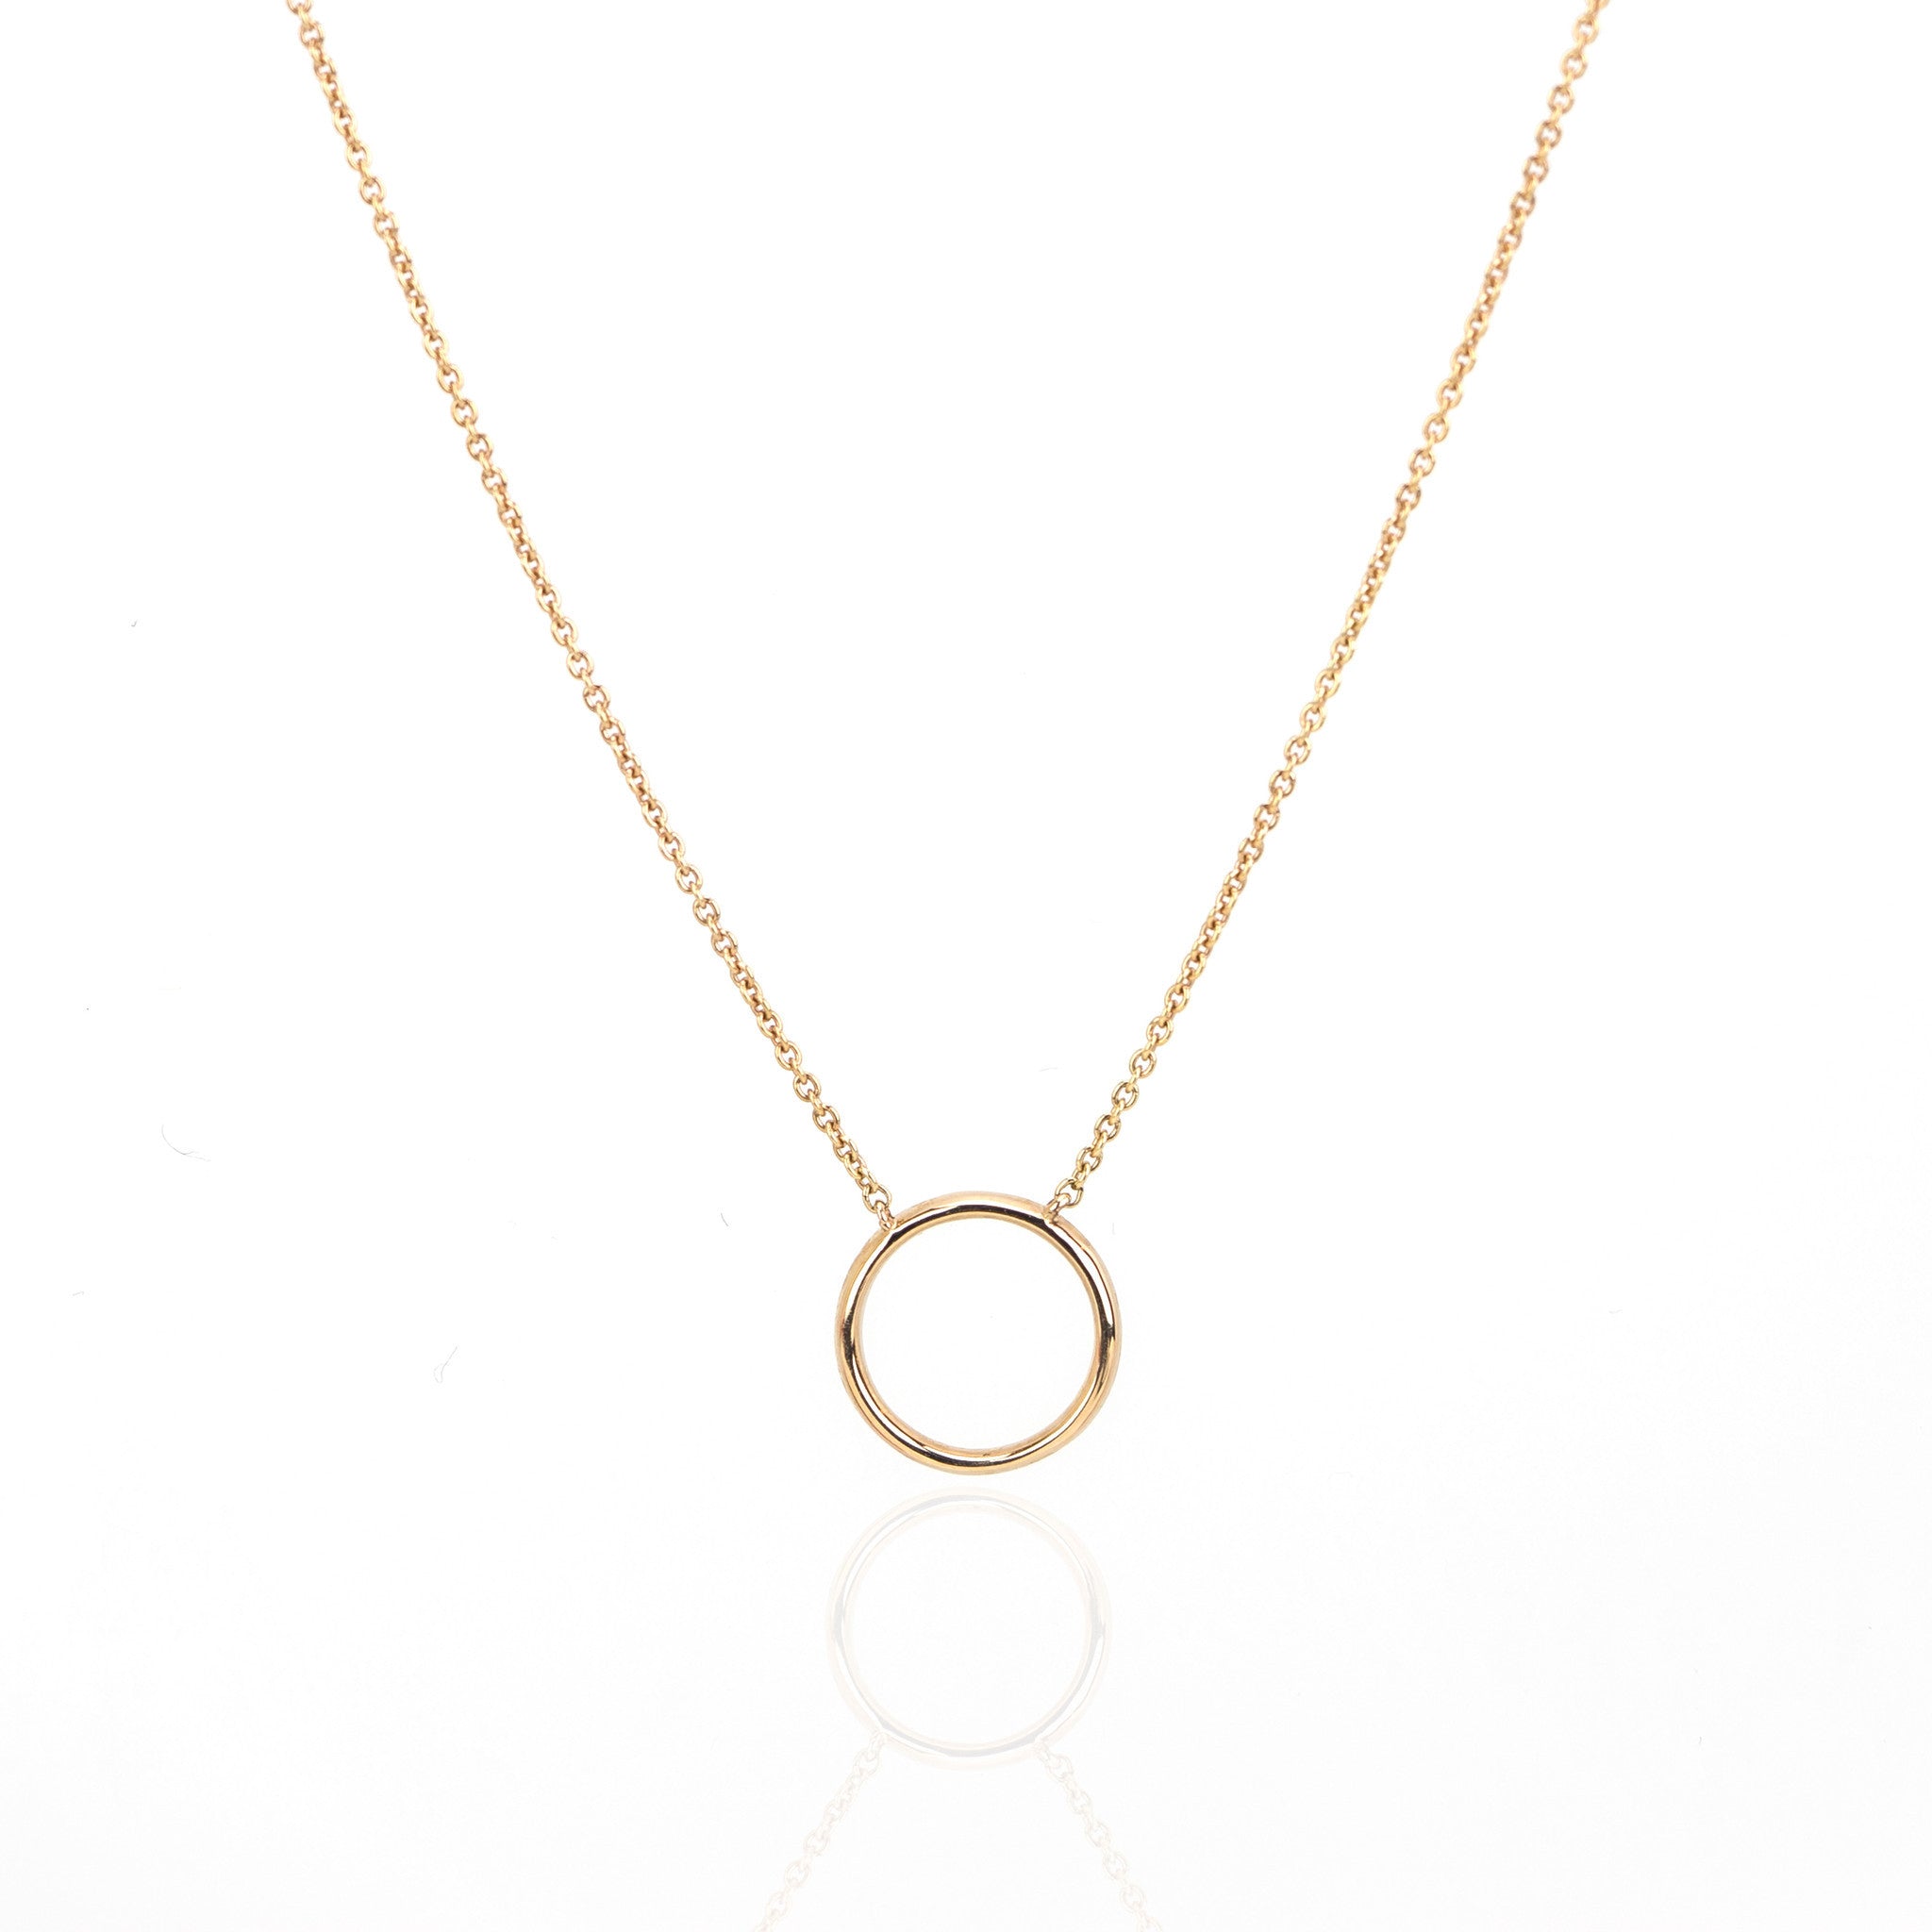 Halo Diamond Necklace by Atheria Jewelry